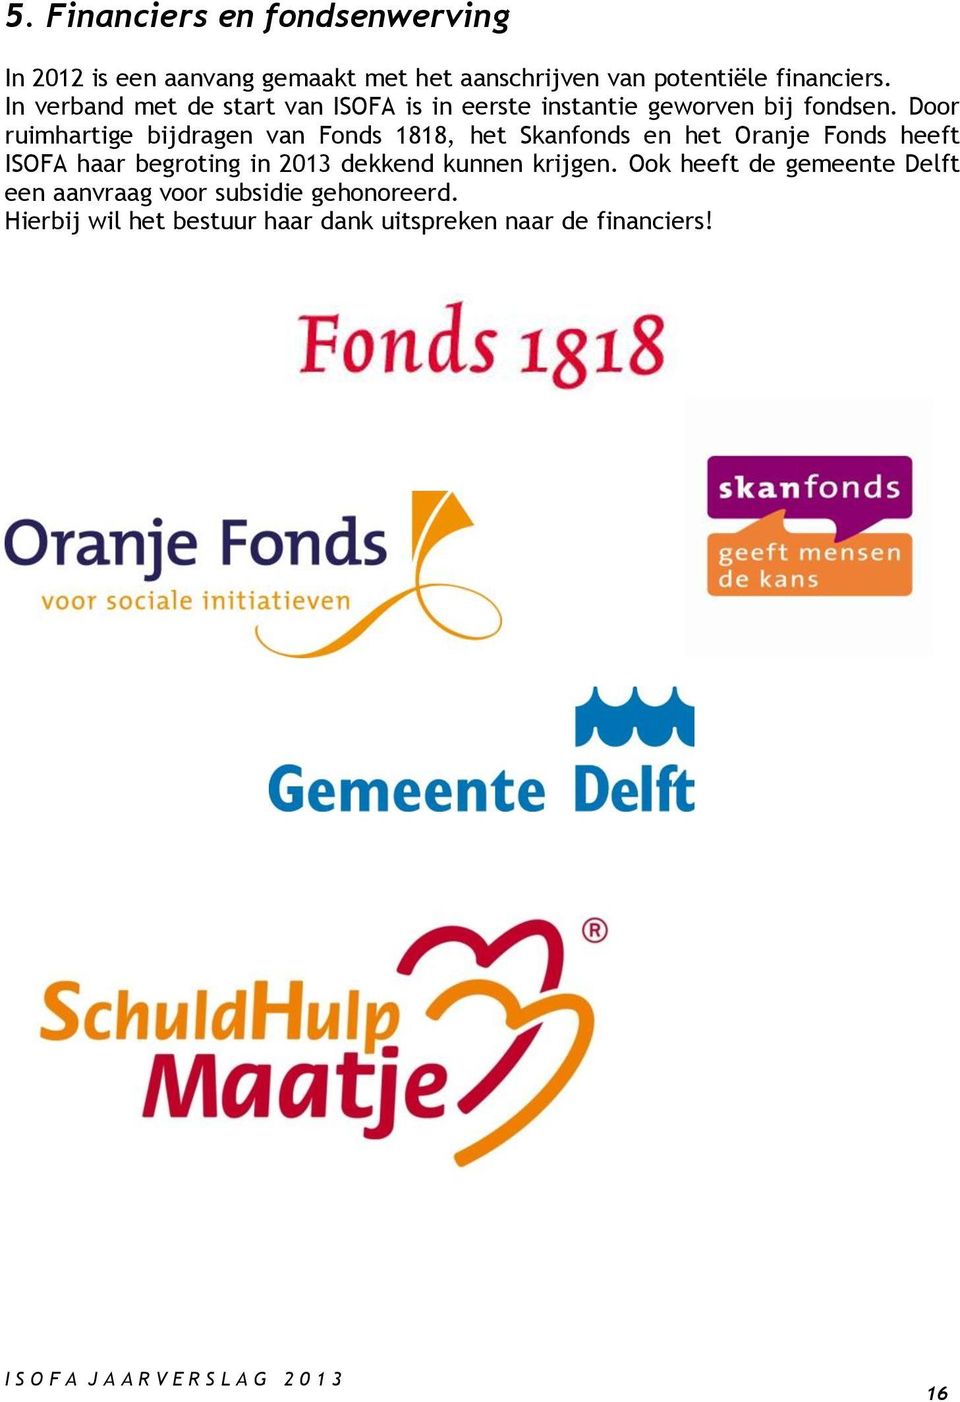 Door ruimhartige bijdragen van Fonds 1818, het Skanfonds en het Oranje Fonds heeft ISOFA haar begroting in 2013